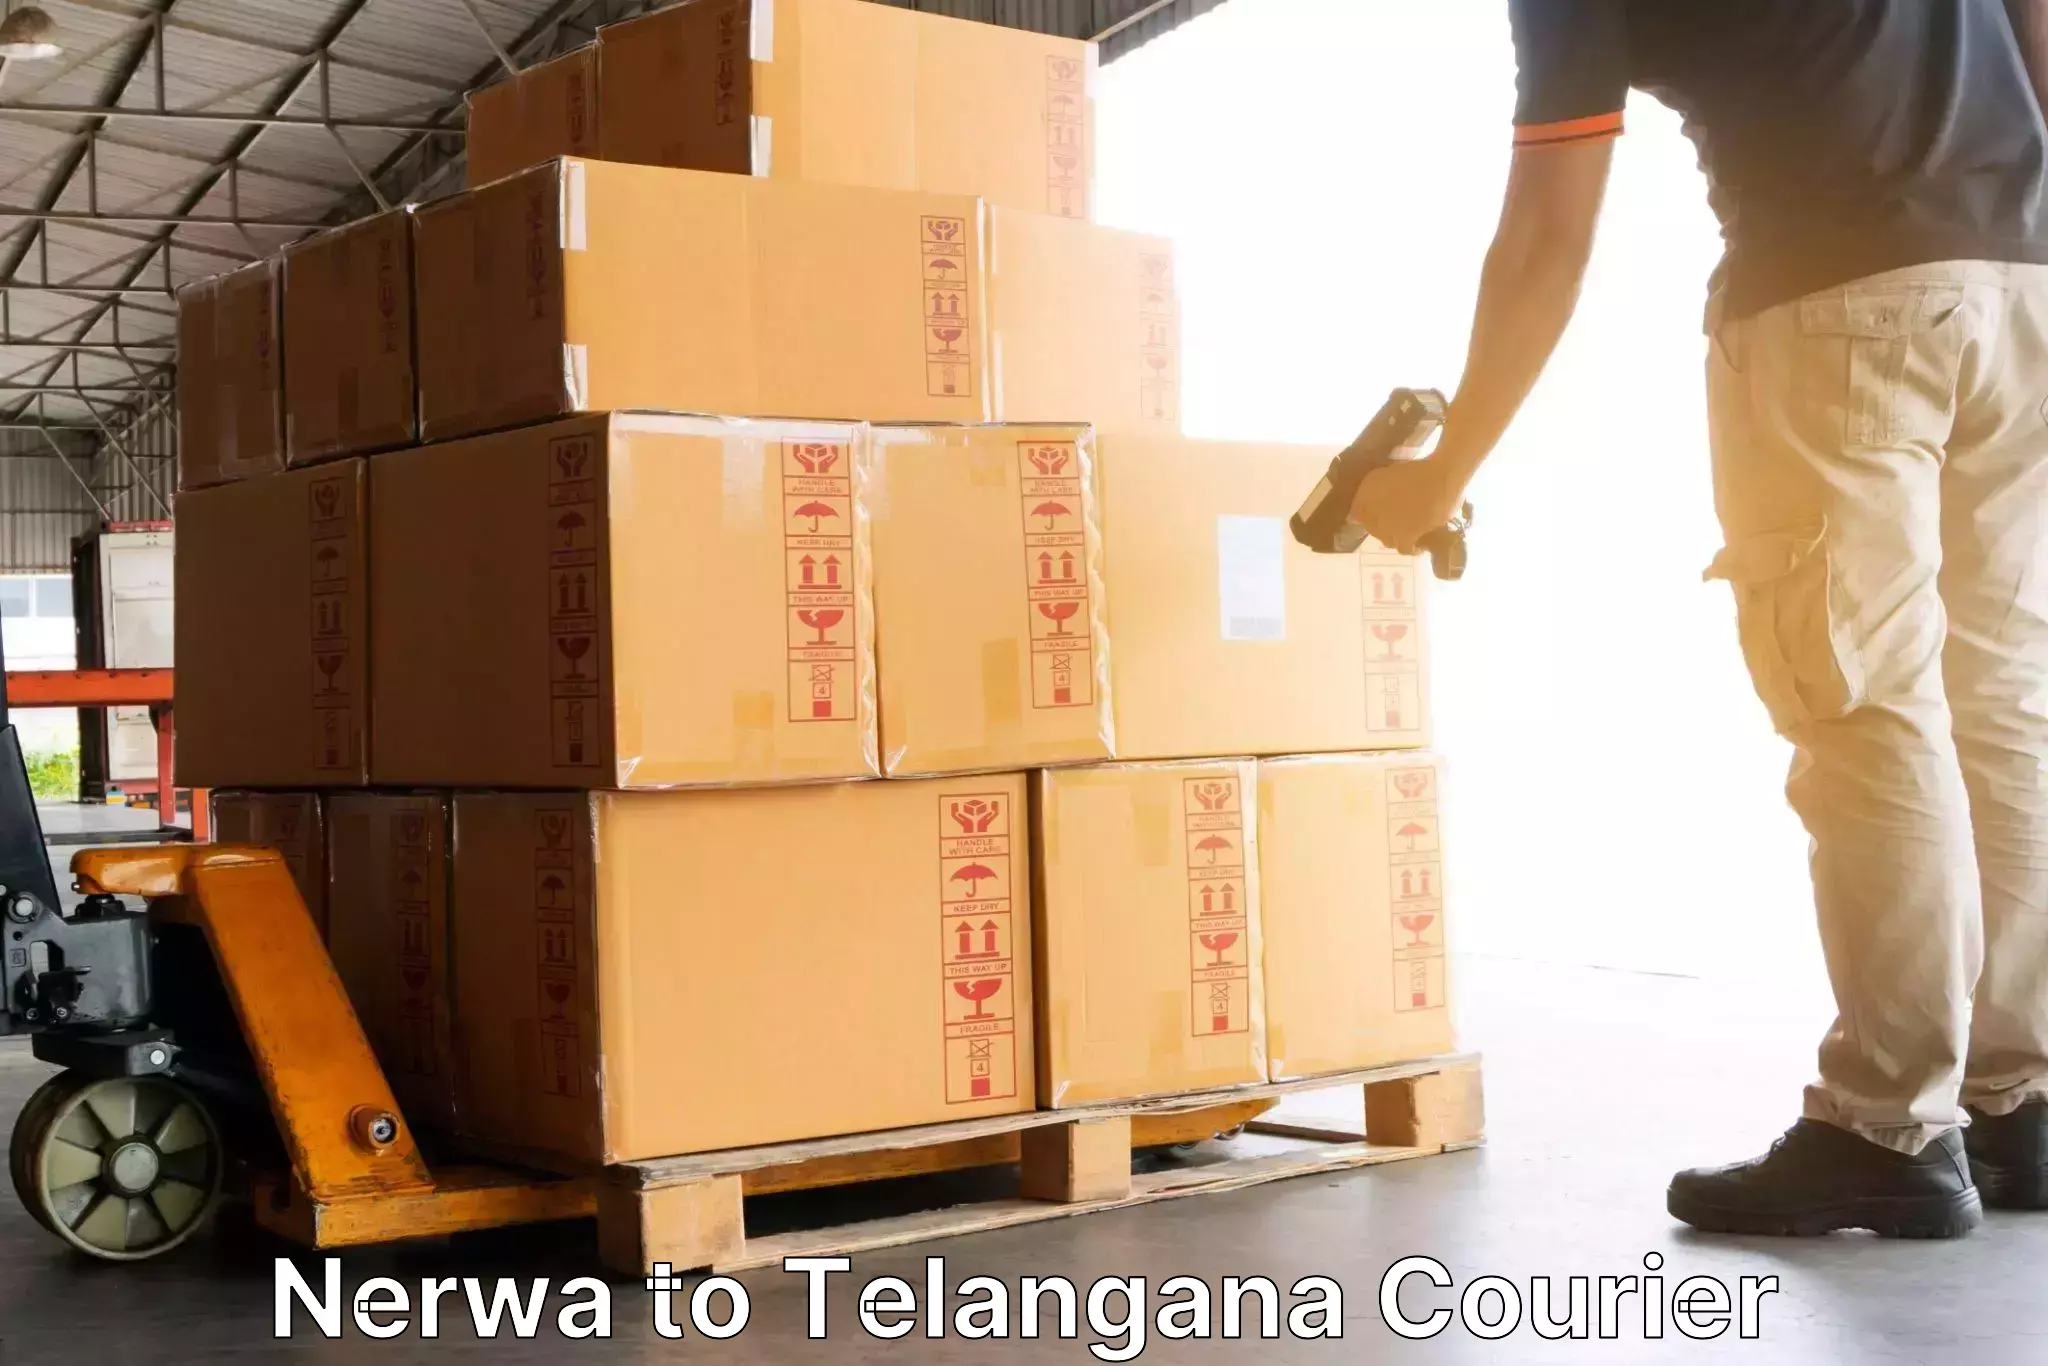 Courier service partnerships Nerwa to Cherla